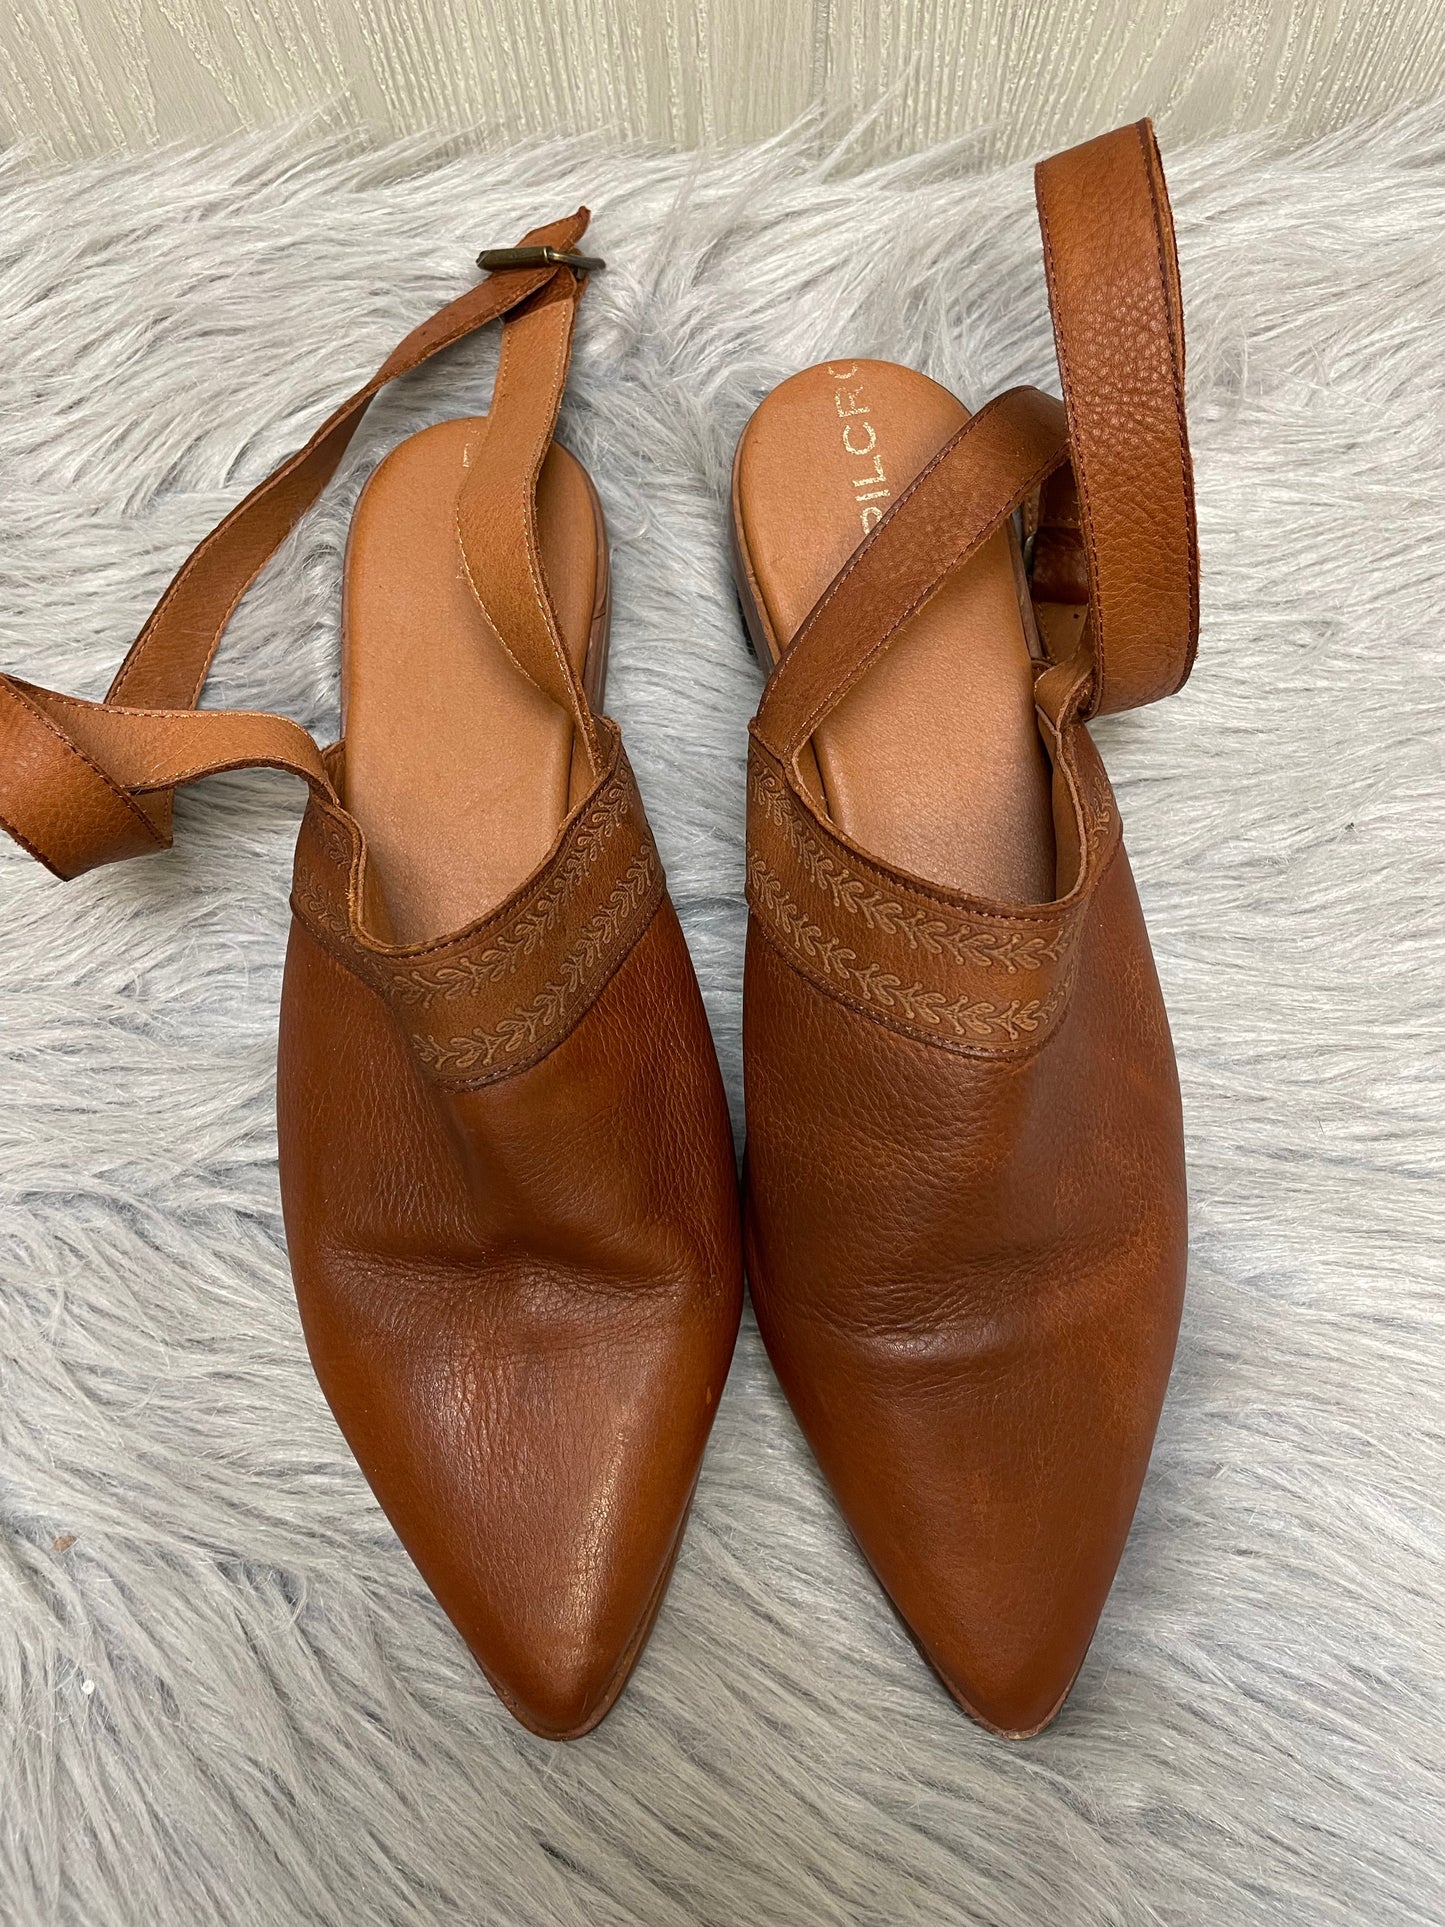 Brown Shoes Flats Pilcro, Size 9